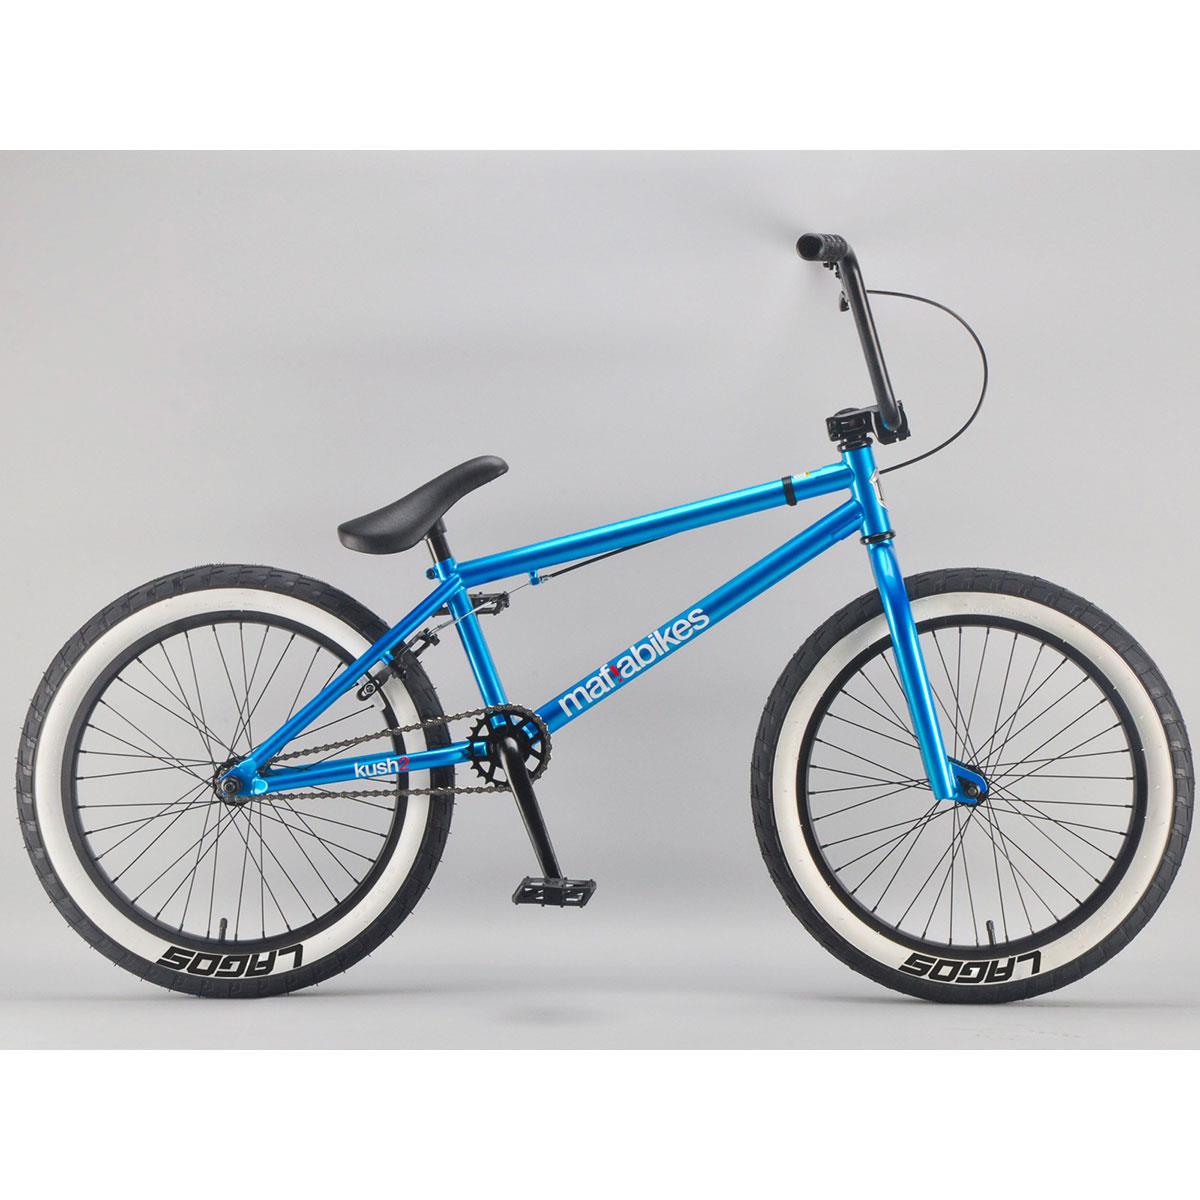 teal bmx bike